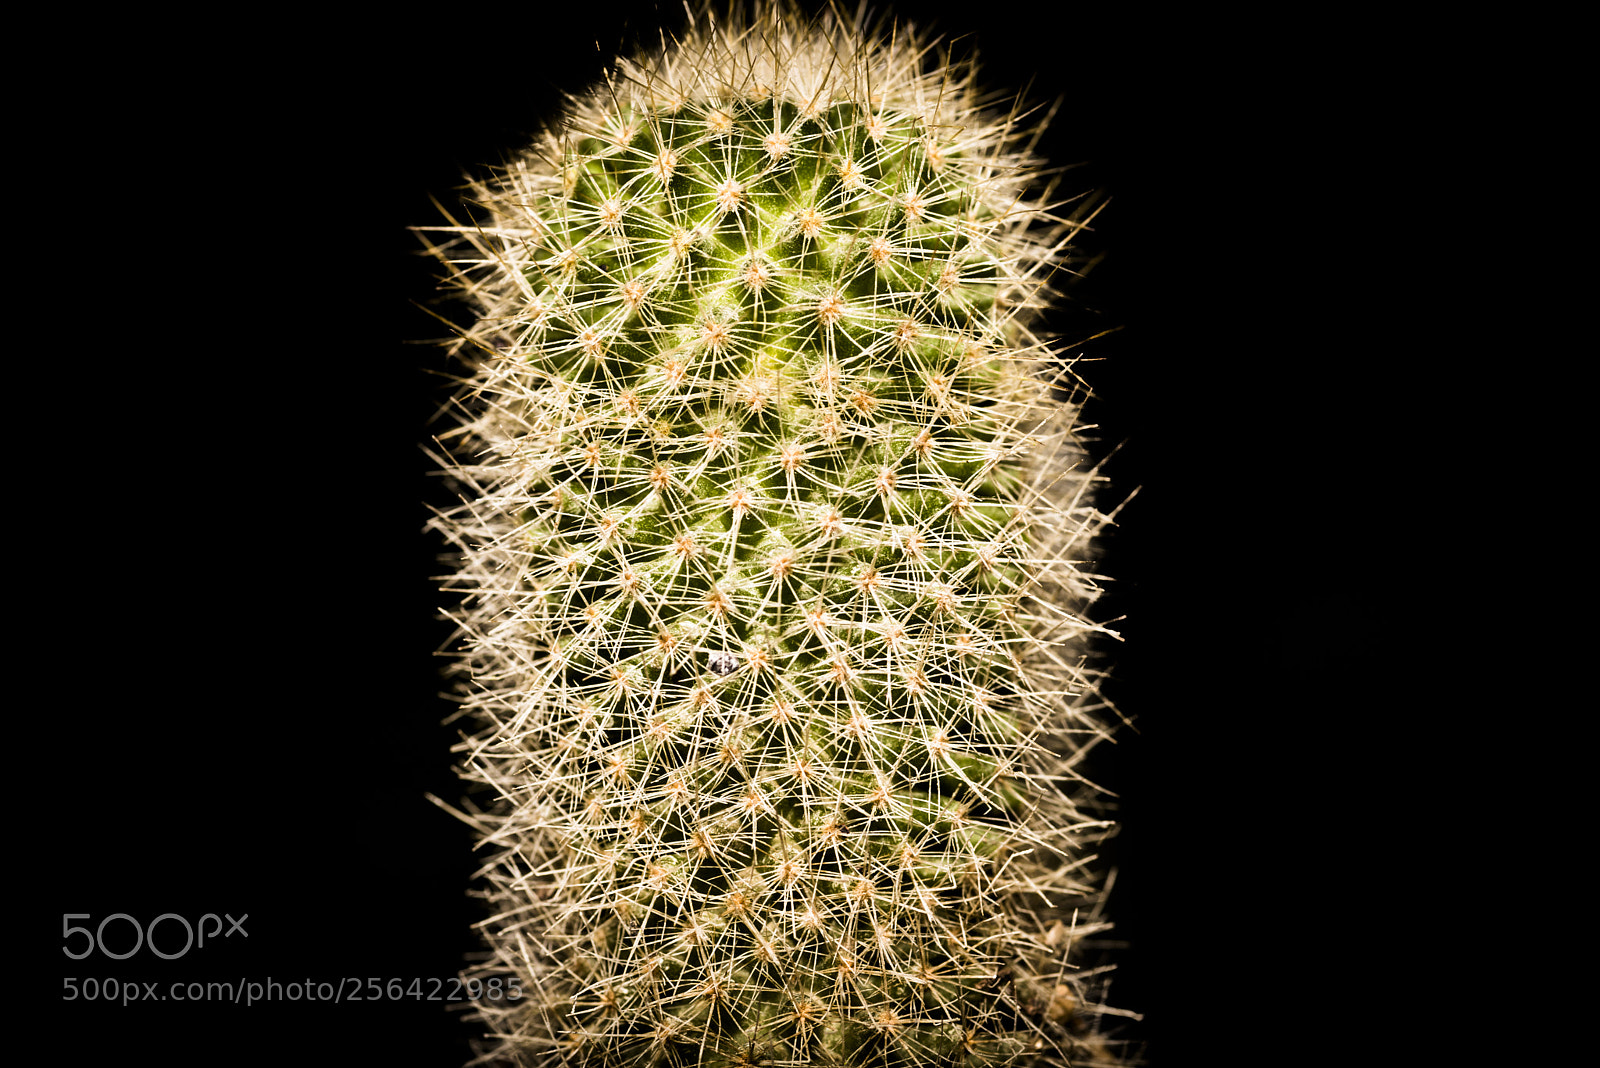 Nikon D750 sample photo. Cactus photography